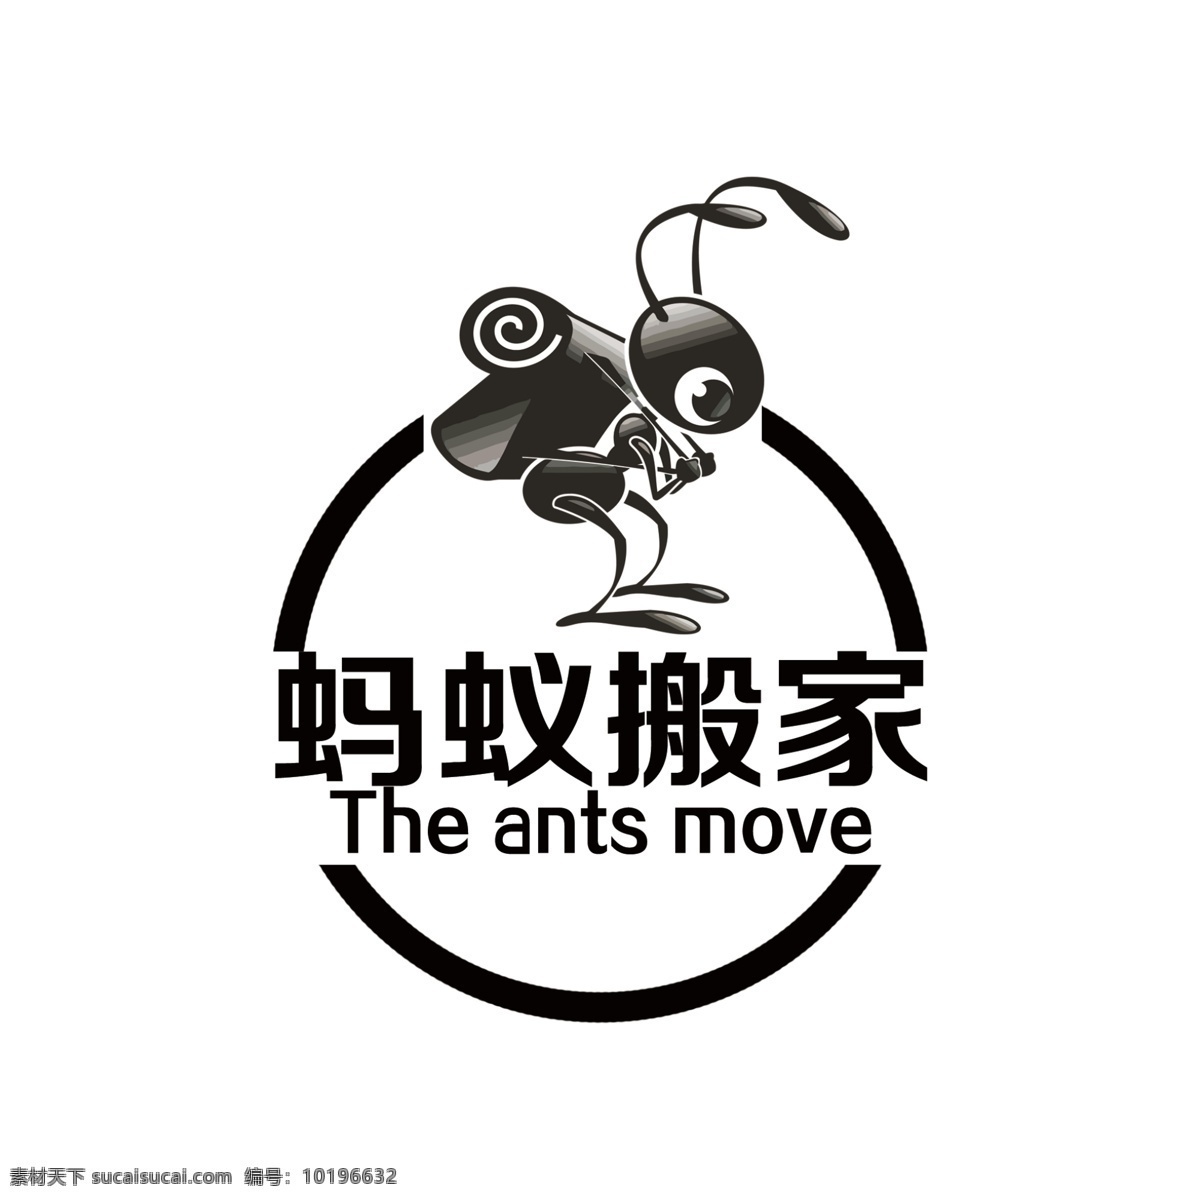 蚂蚁 搬家 logo 标志 蚂蚁搬家公司 蚂蚁标 蚂蚁商标 商标